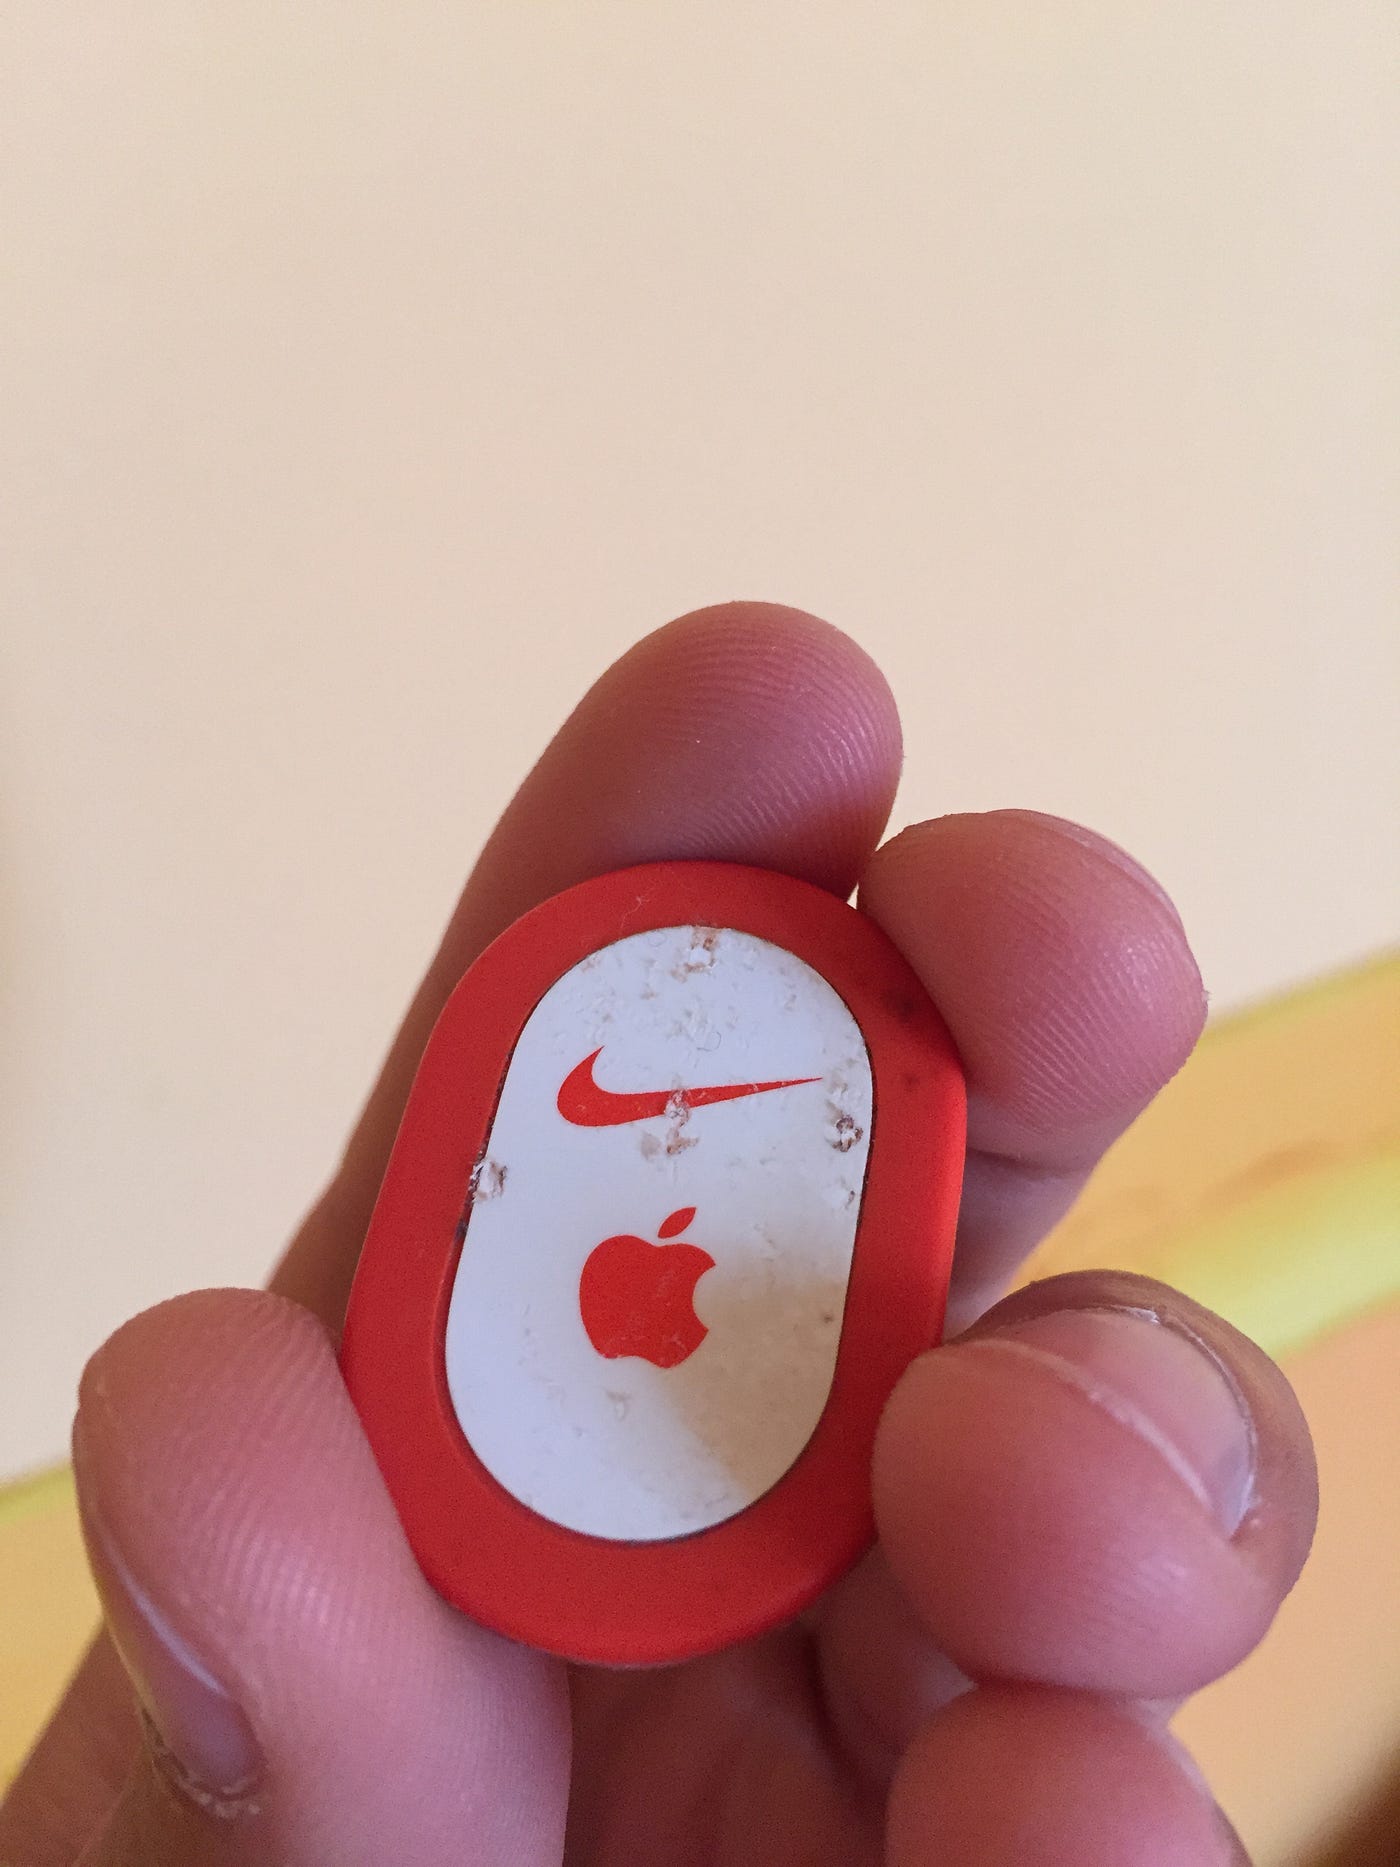 La nostalgia de los que corríamos con un chip en el y un iPod en la mano | by Iván | Medium